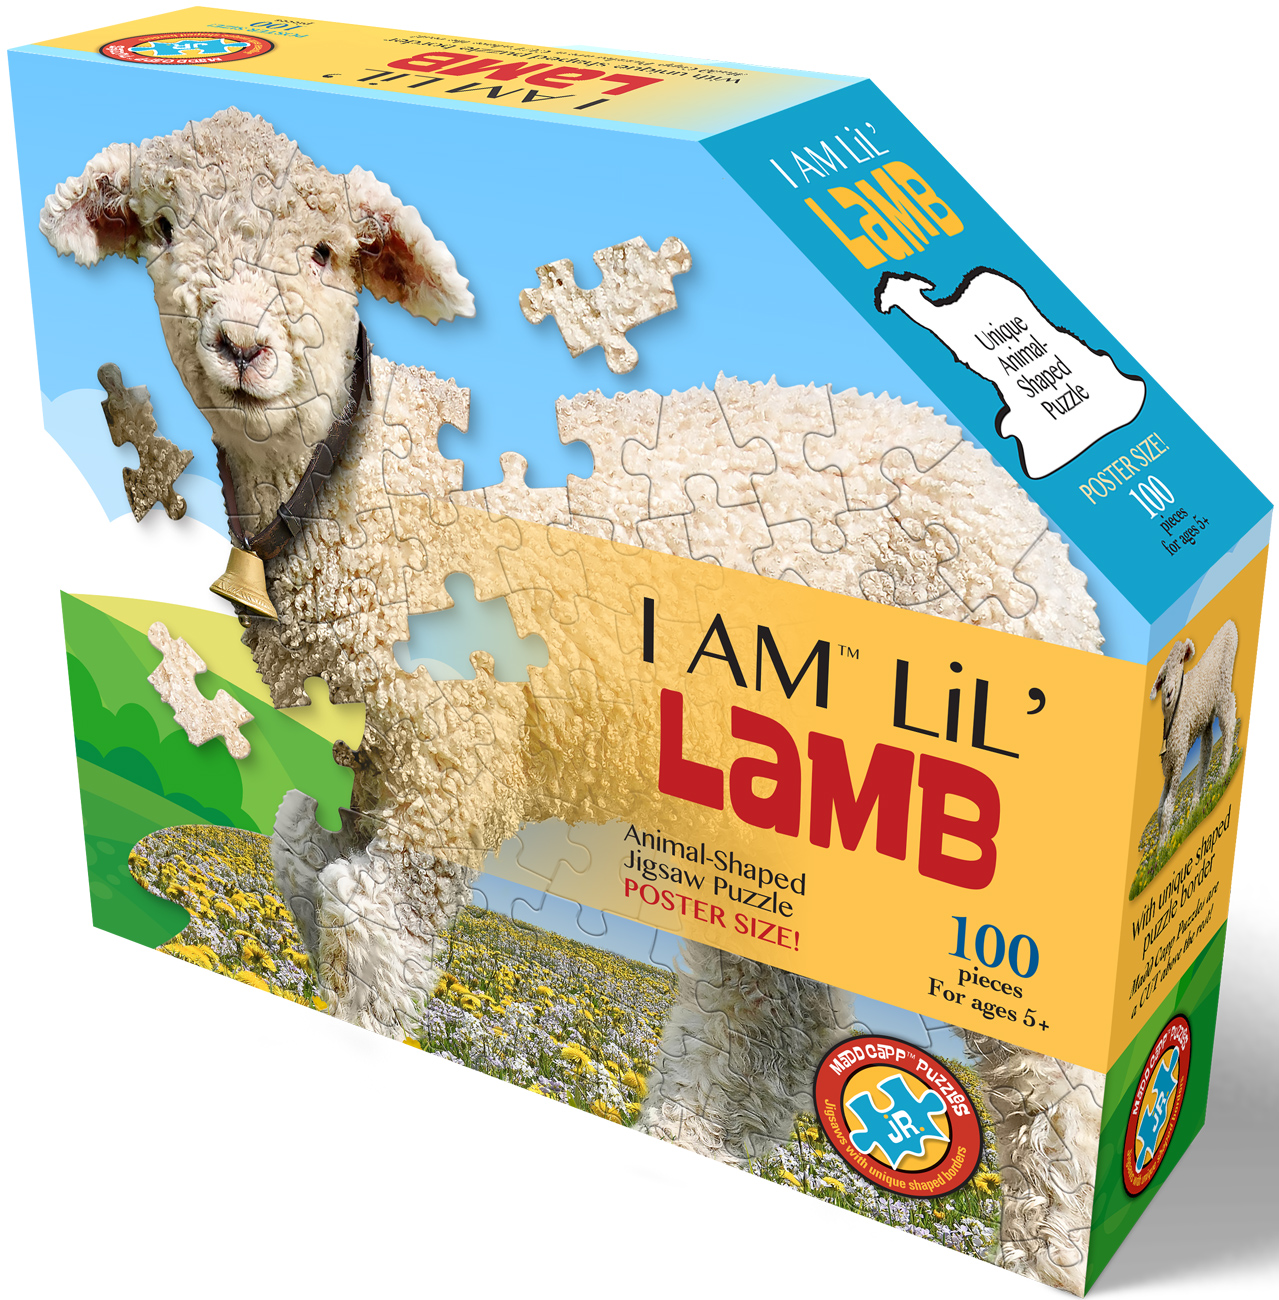 I Am Lil' Lamb - Scratch and Dent